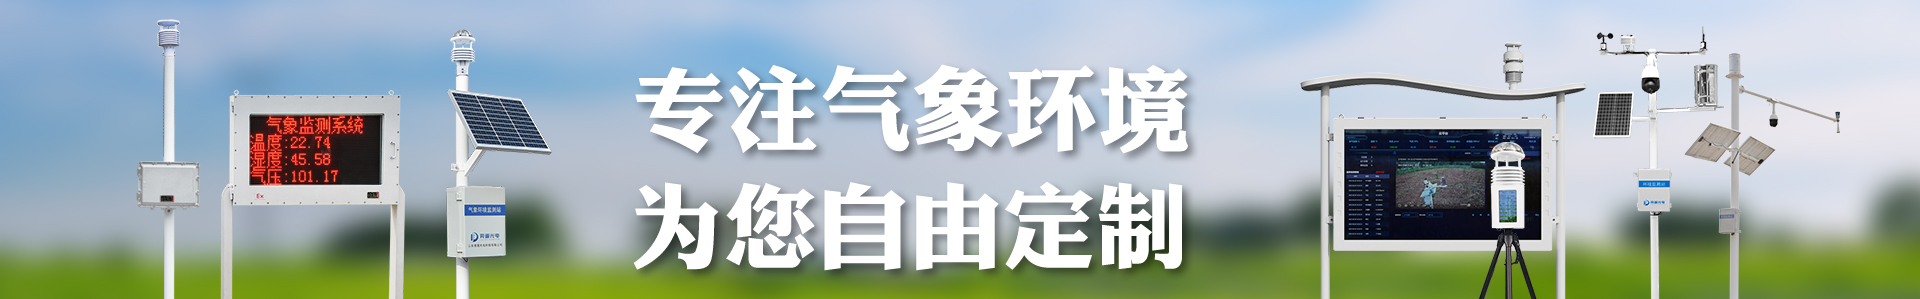 土壤墒情速测仪-自动气象站-小型气象站-防爆气象站-光伏气象站-南宫NG·28(中国)官方网站